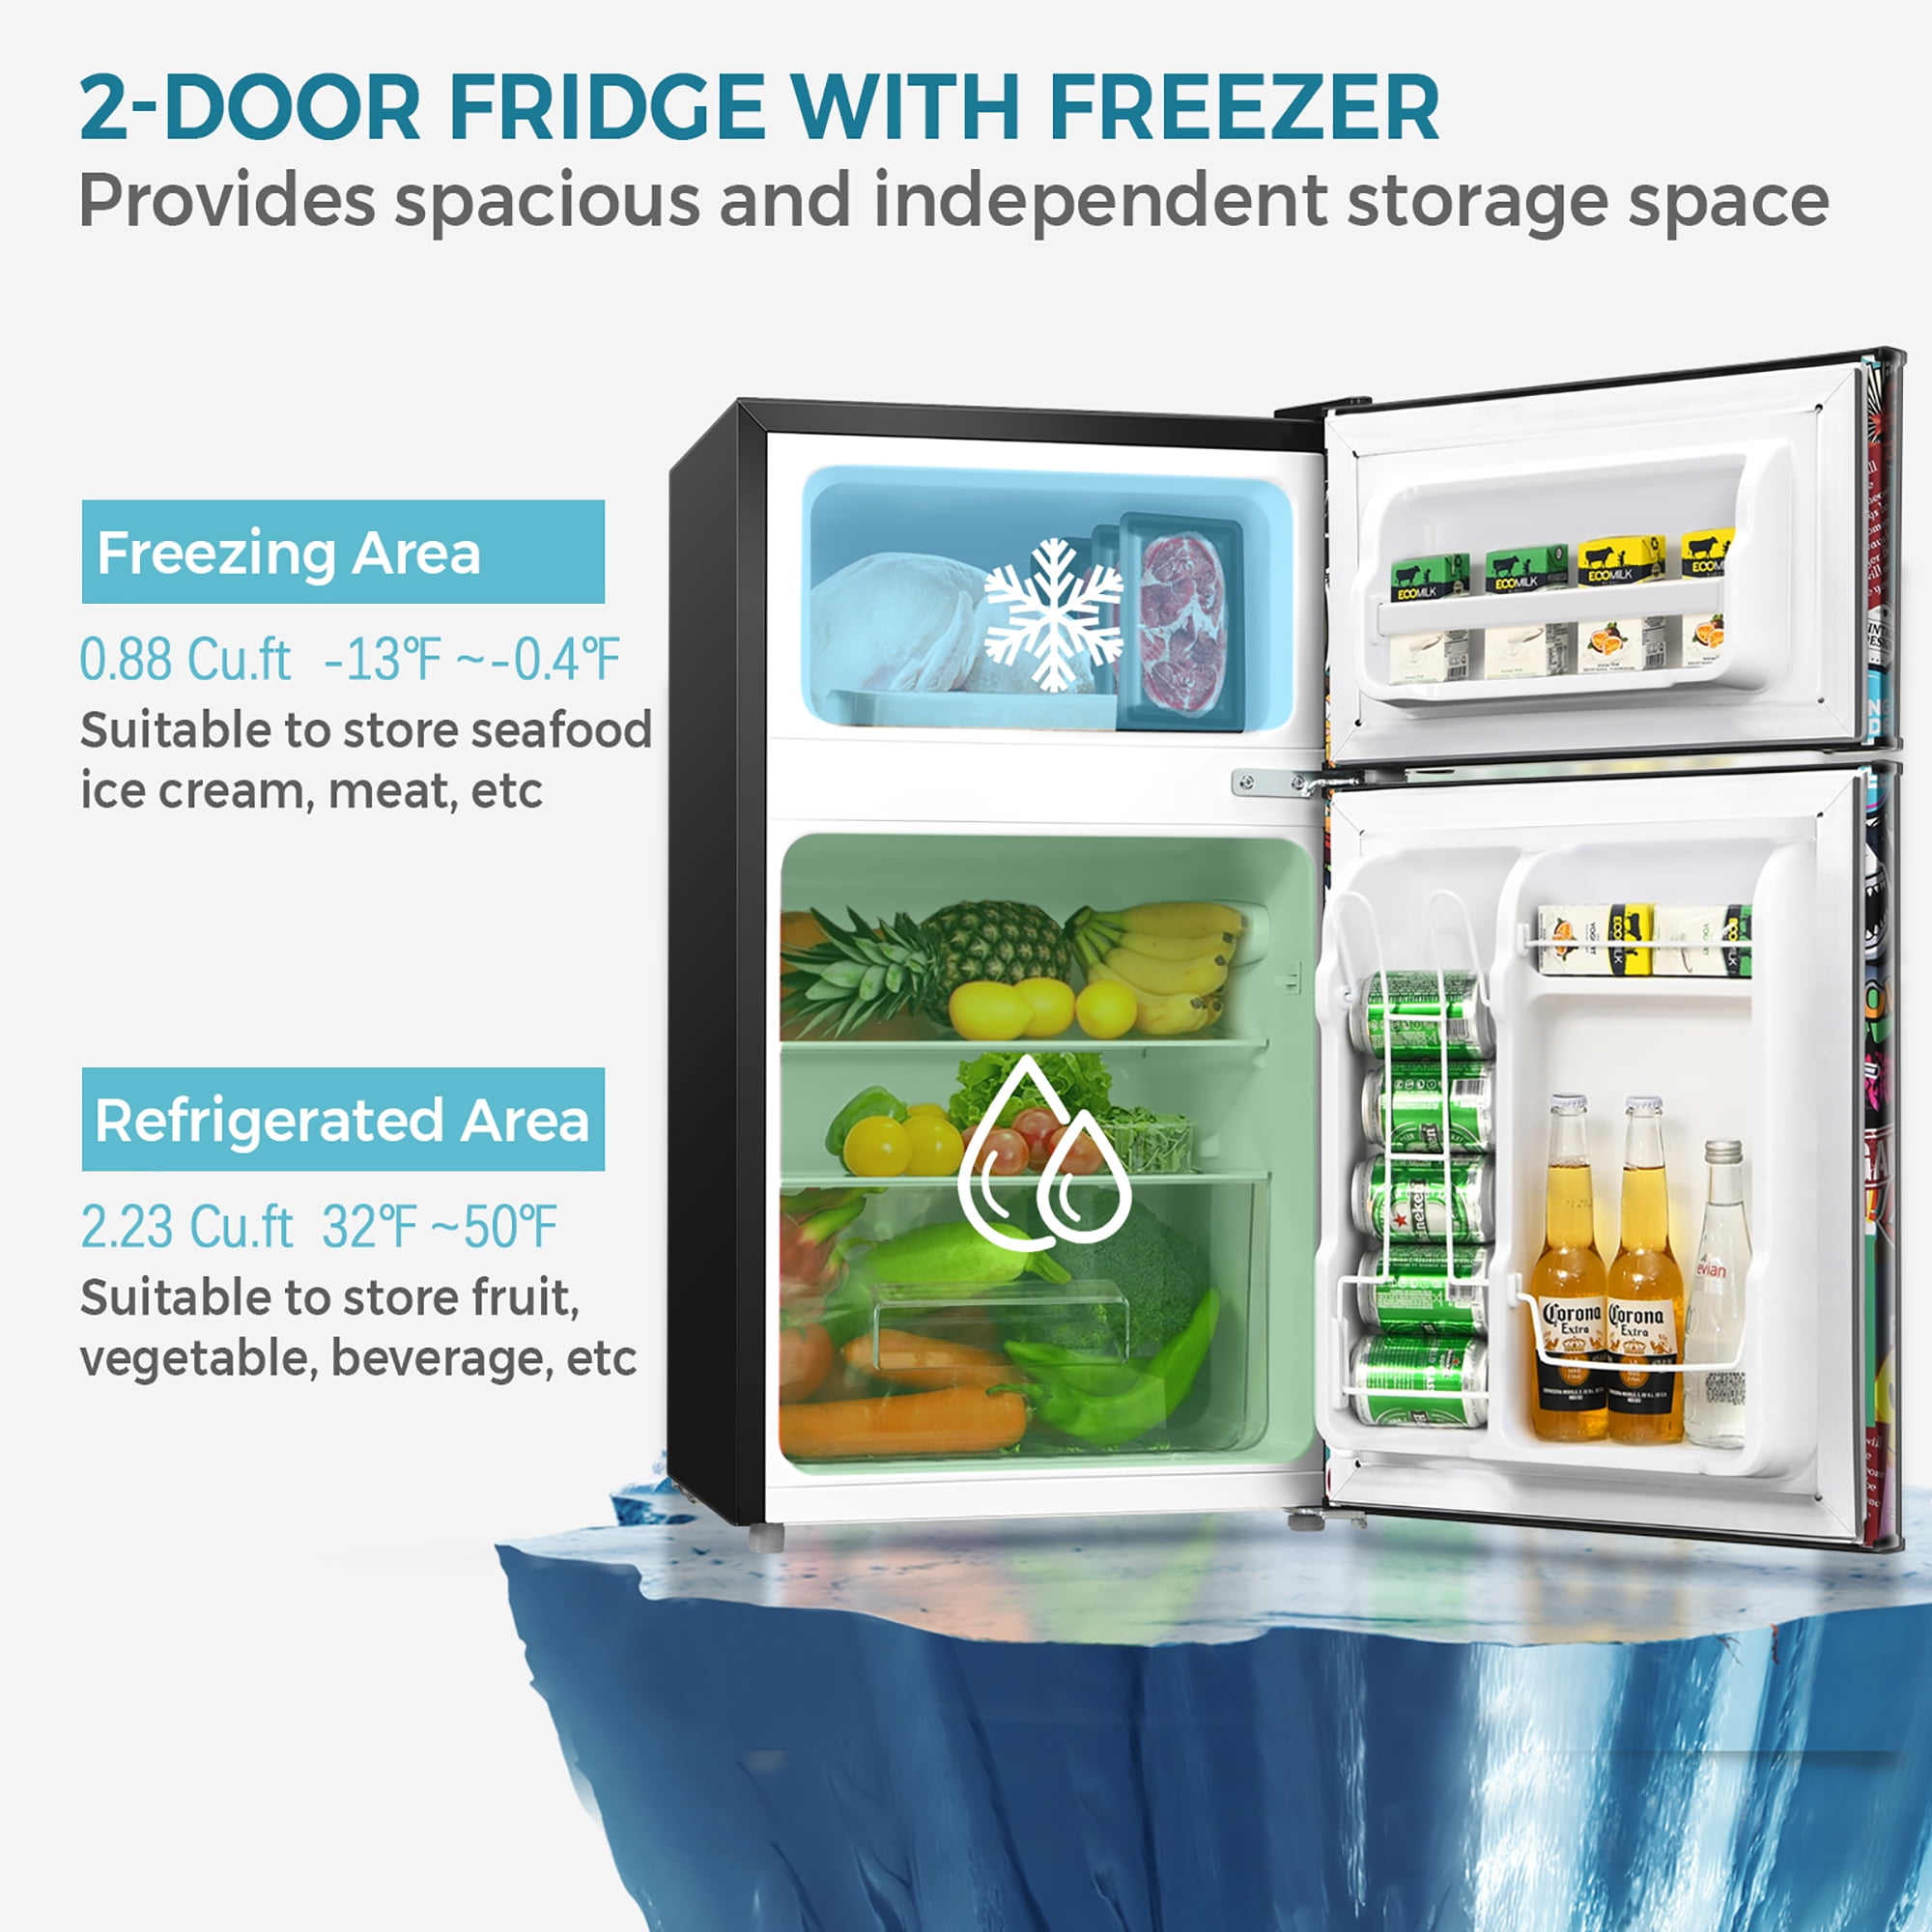  COSTWAY Refrigerador compacto, 2 puertas 3.4 pies cúbicos  Refrigerador para debajo del mostrador, unidad de congelador y refrigerador  para dormitorio, oficina, apartamento con estantes ajustables de cristal  extraíbles : Electrodomésticos